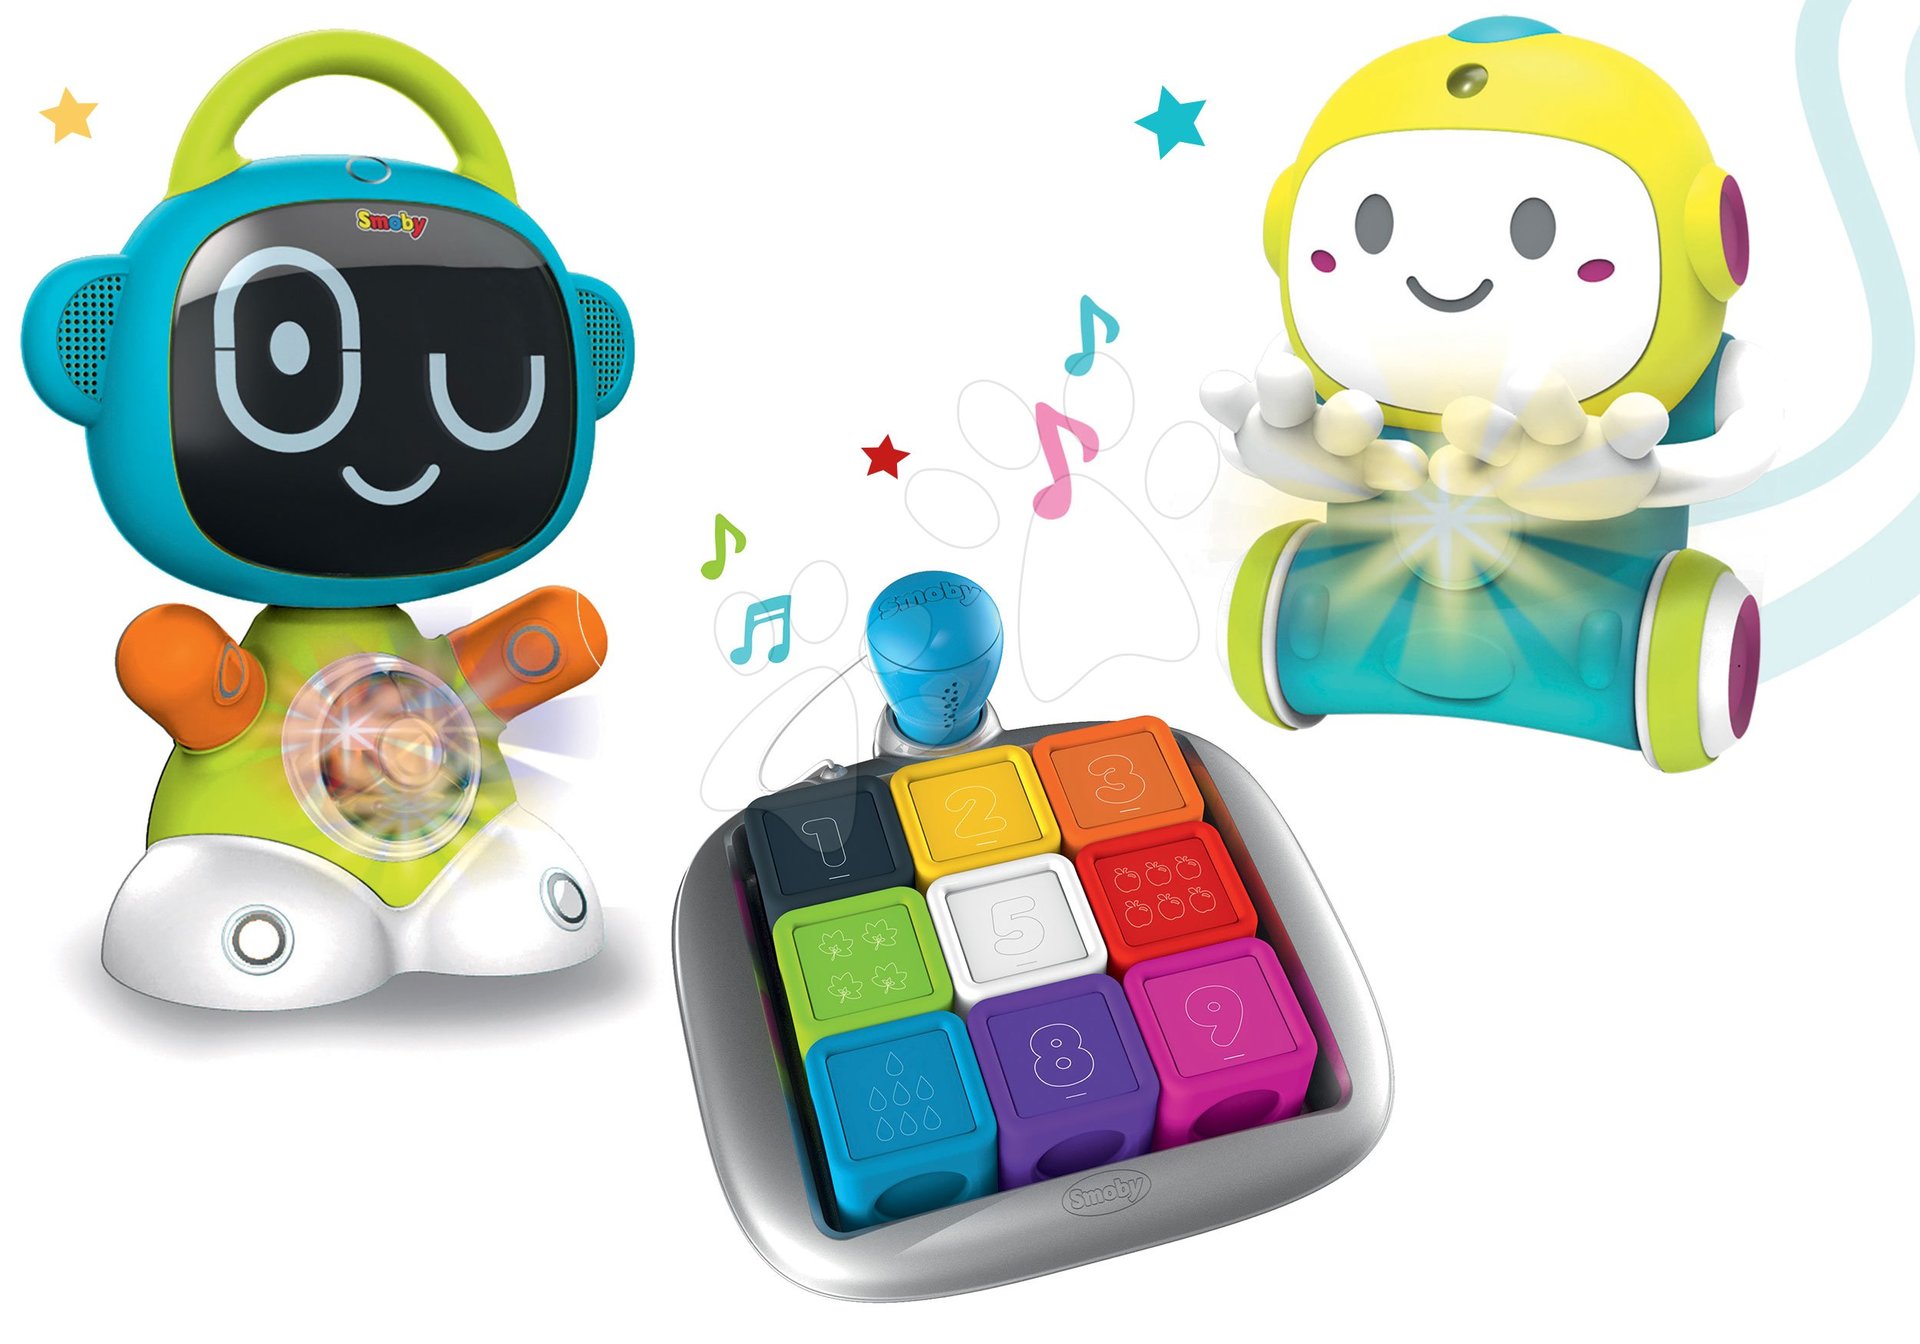 Pre bábätká - Set interaktívny Robot TIC Smart Smoby s 3 náučnými hrami hra na schovávačku a múdra hra kocky